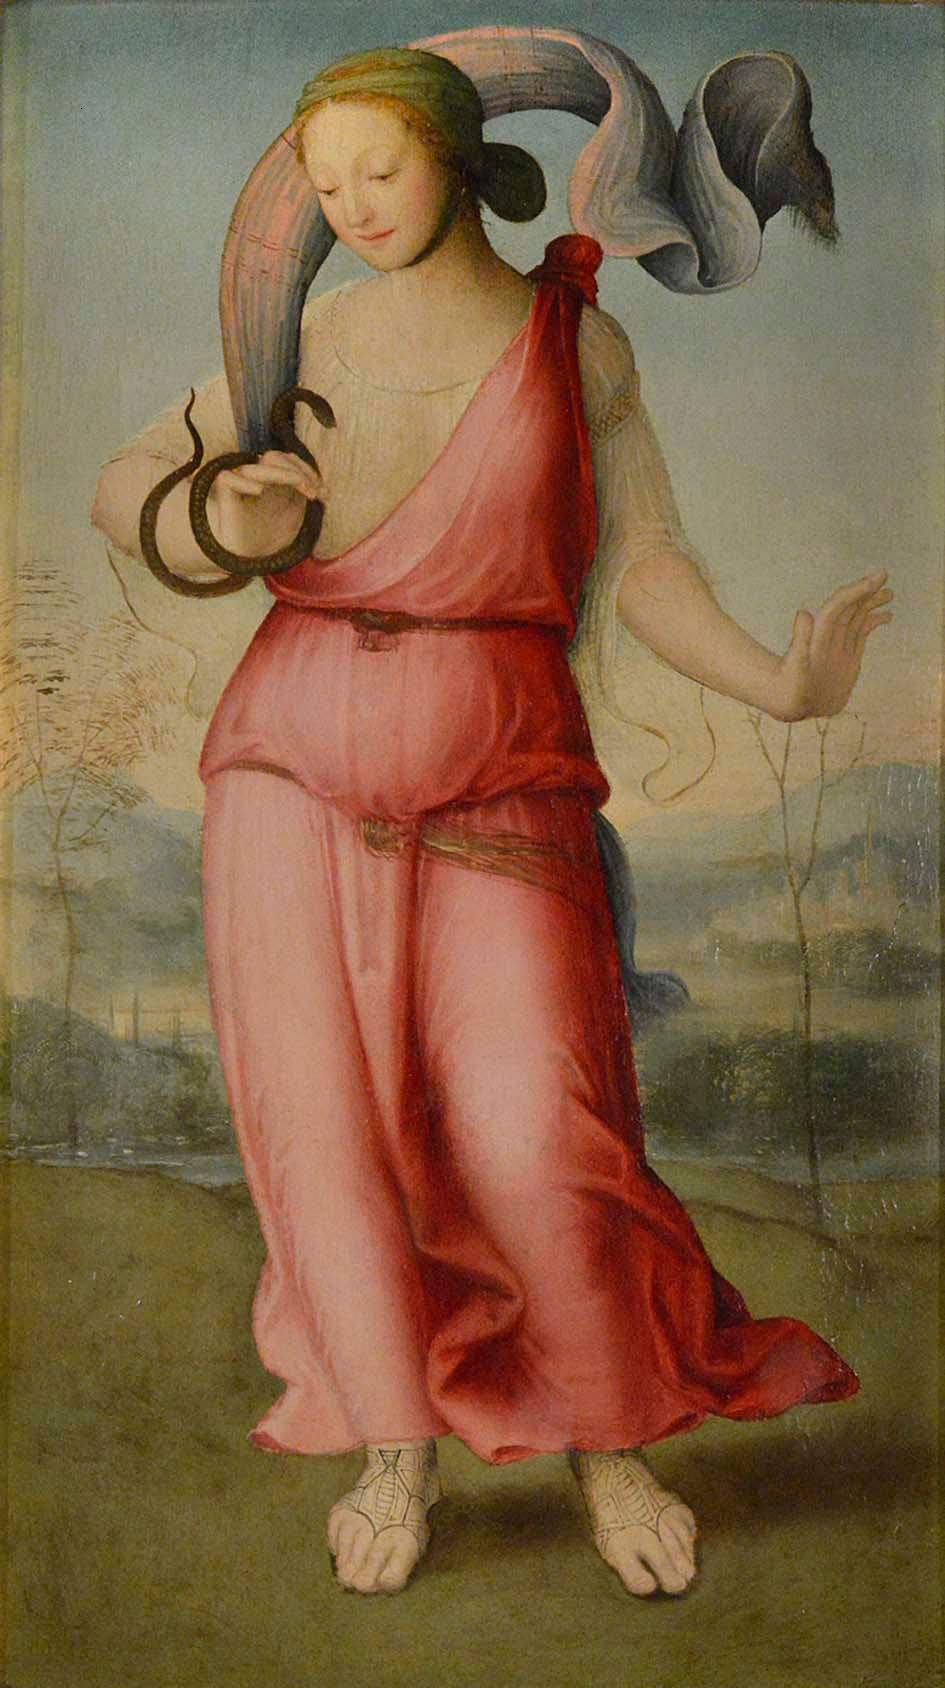 Le bon siècle de la peinture siennoise : une tournée d'expositions dans la province de Sienne